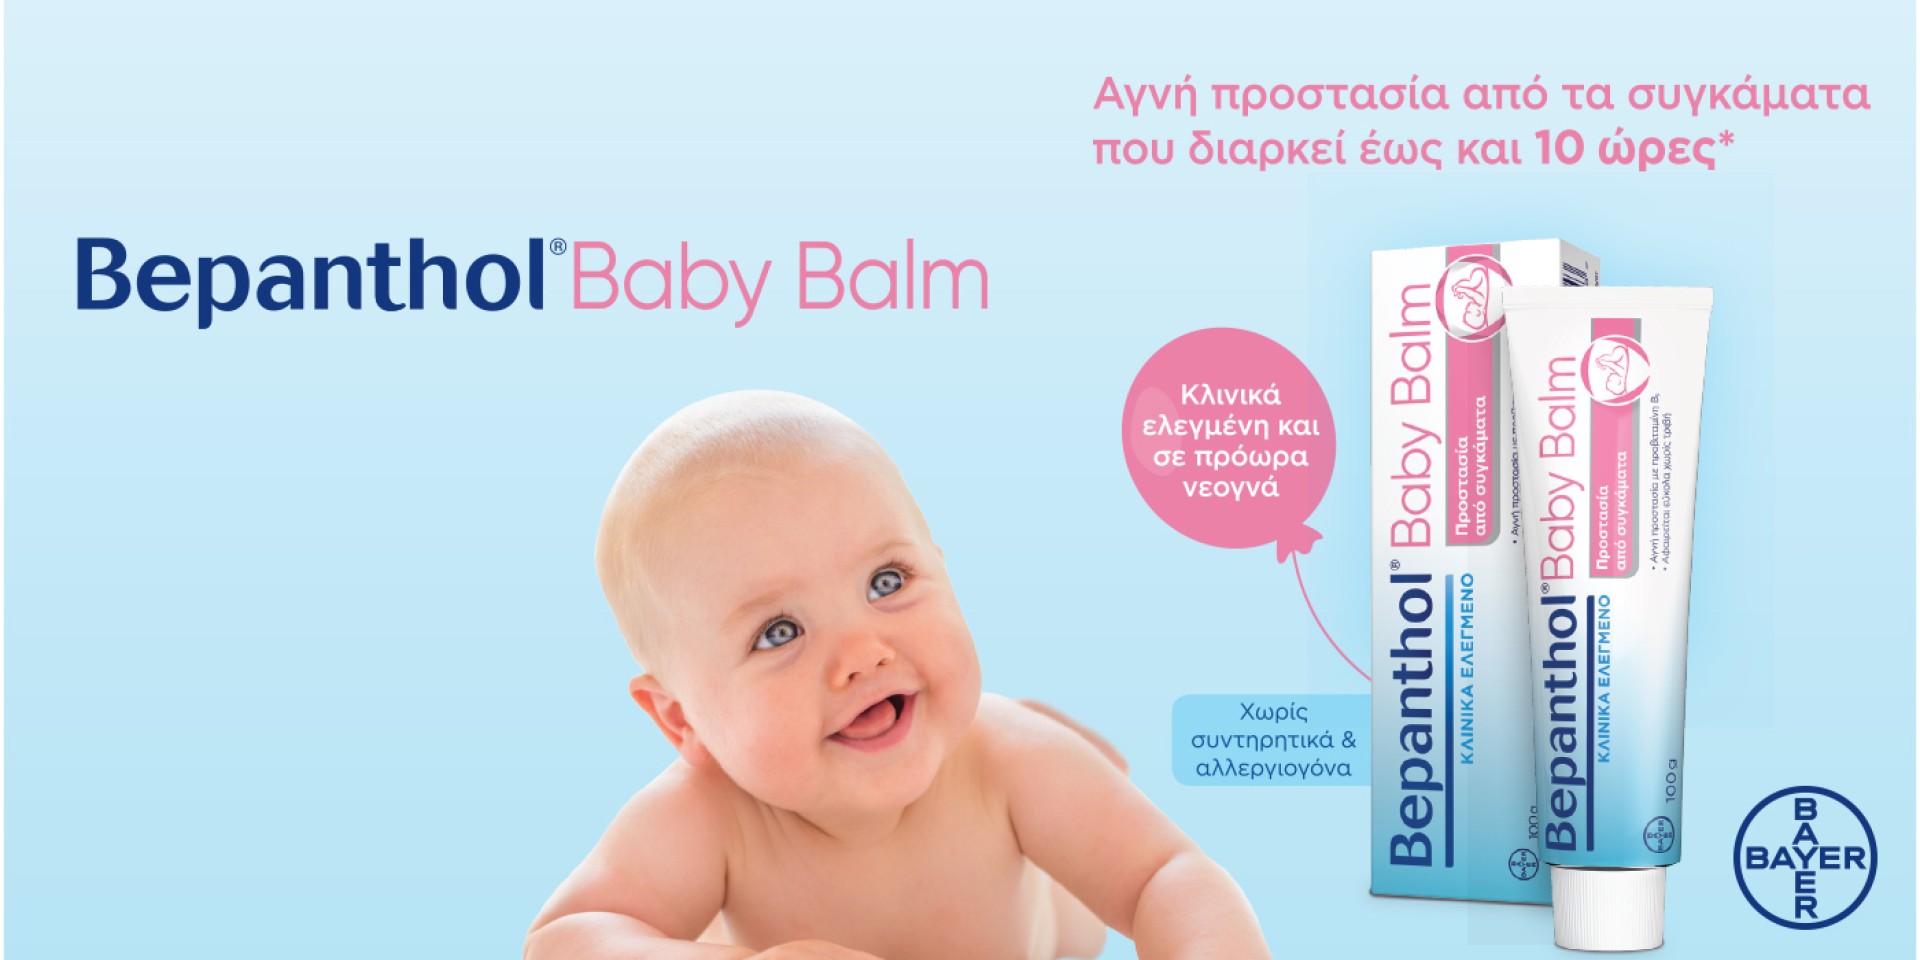 Ανακαλύψτε την εξαιρετική φροντίδα Bepanthol Baby Balm, για το μωράκι σας!